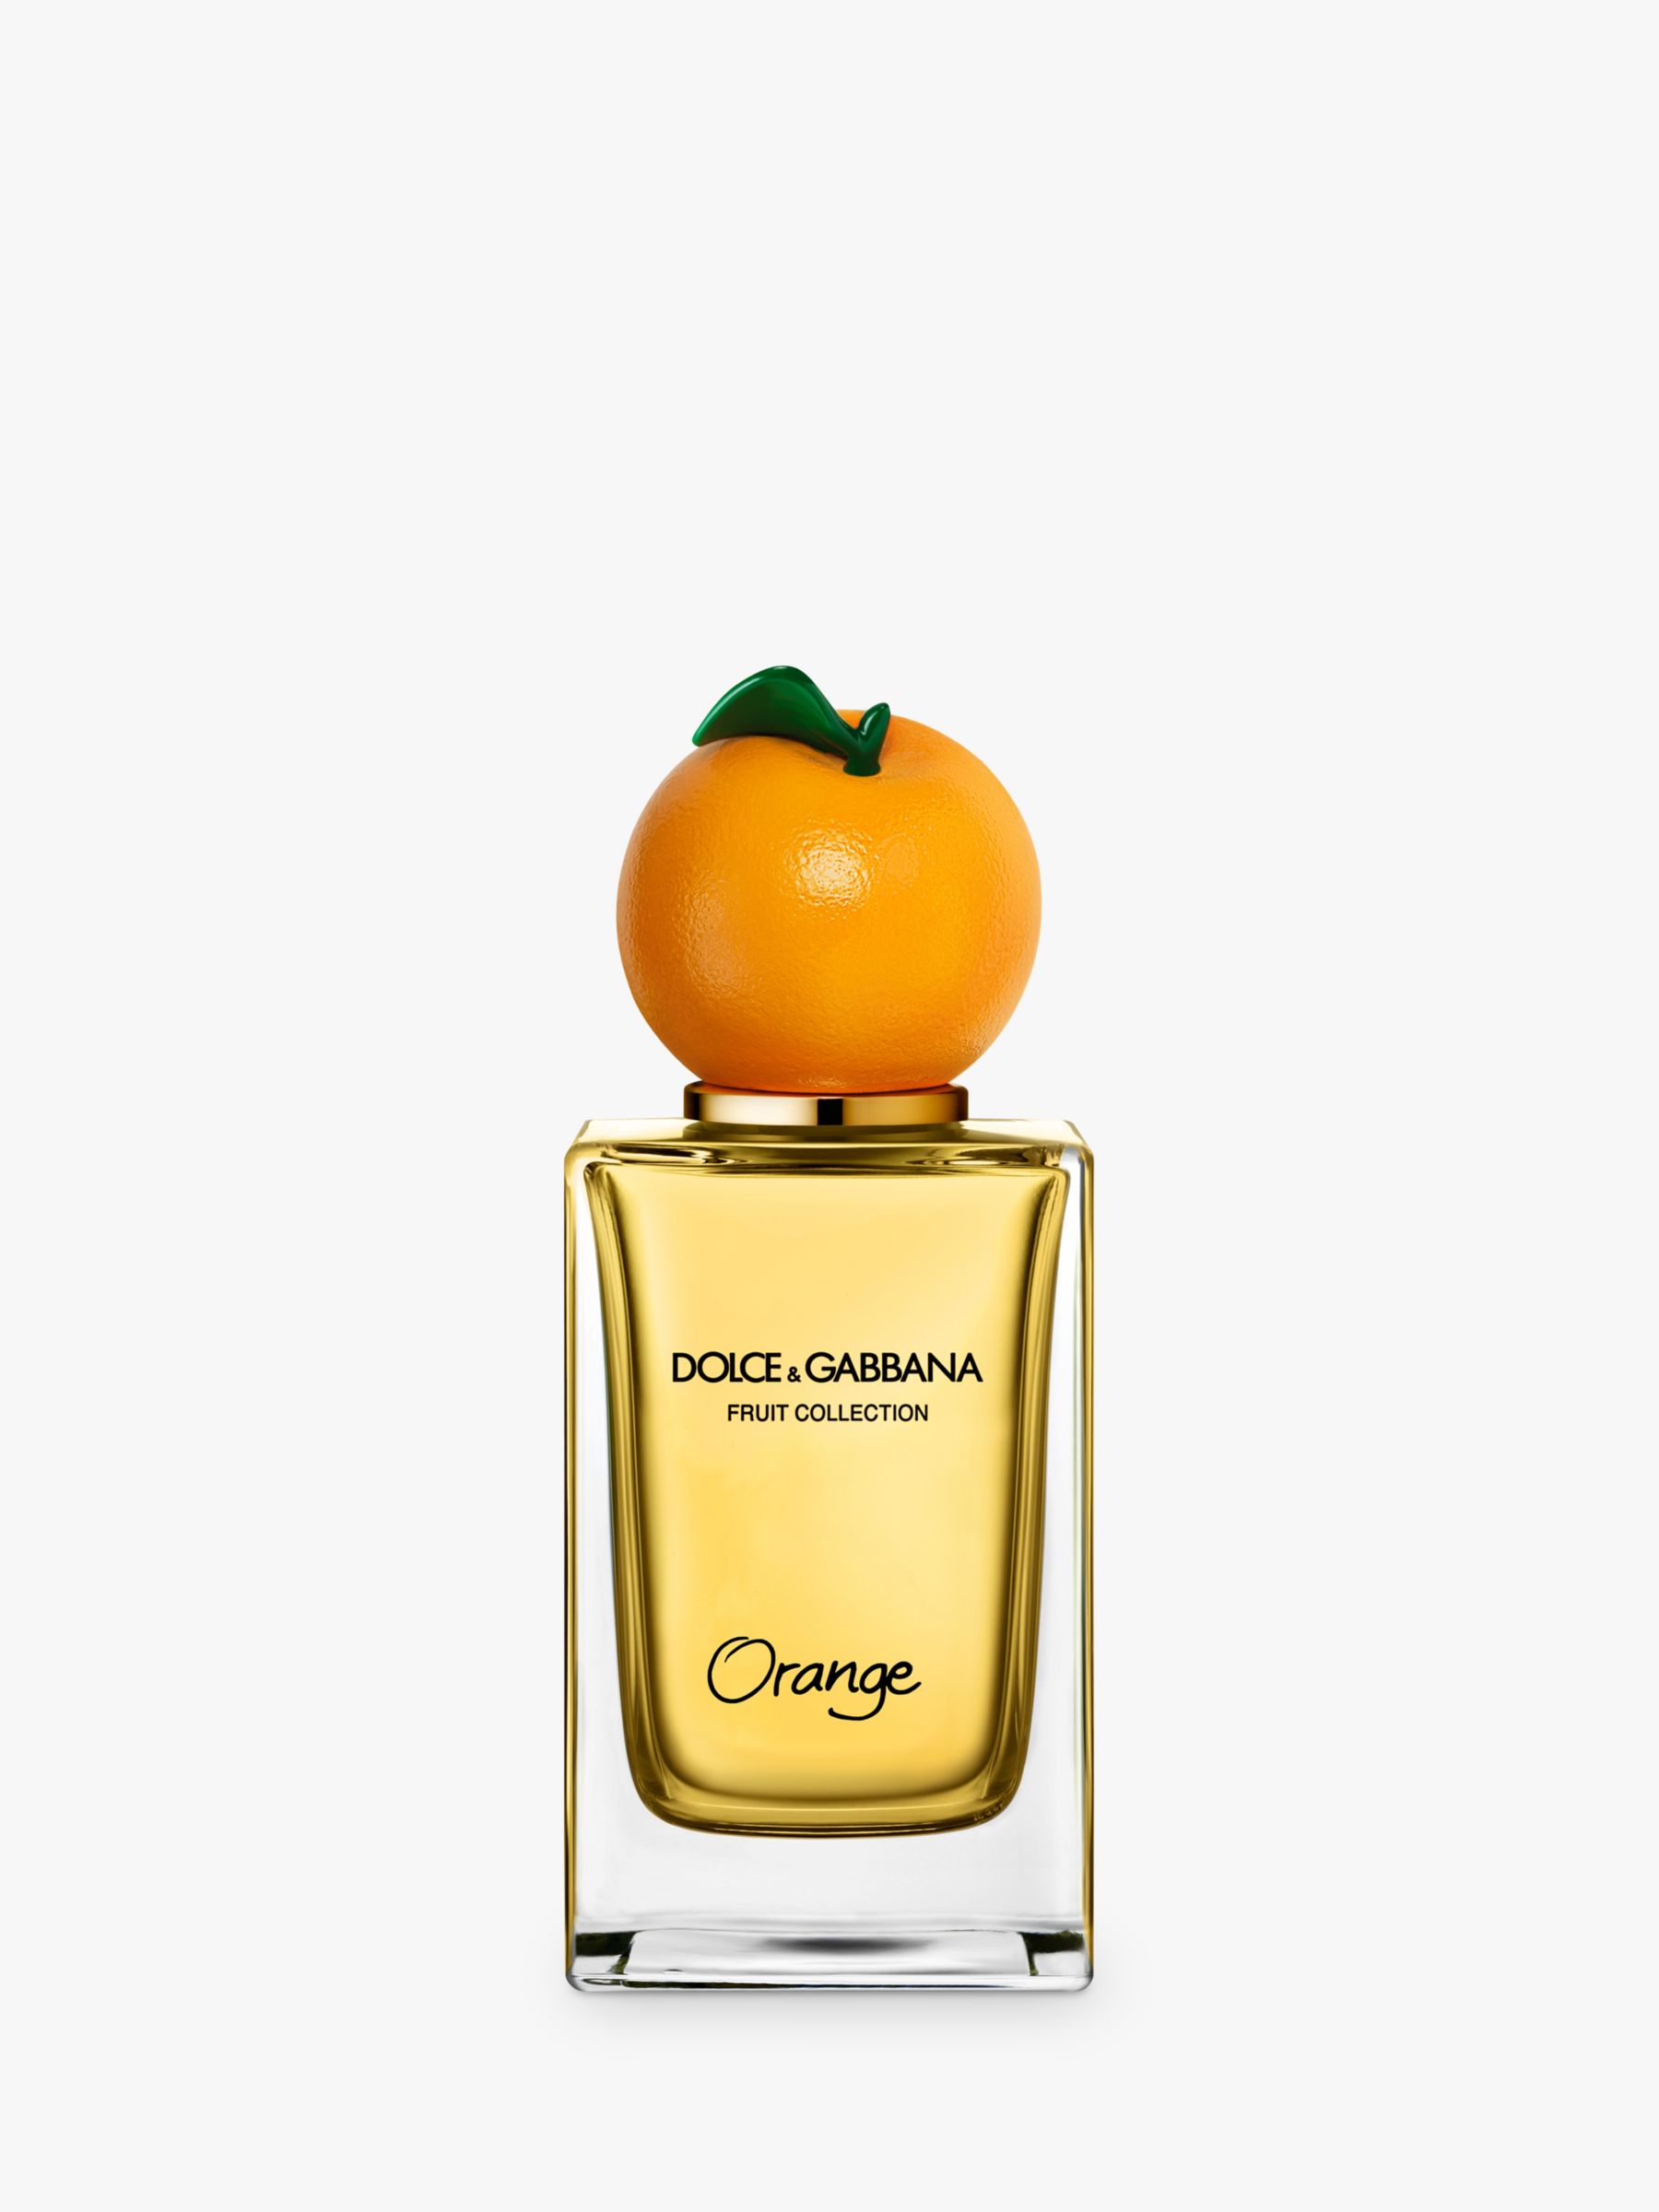 Dolce & Gabbana Fruit Collection Orange Eau de Toilette, 150ml at John  Lewis & Partners